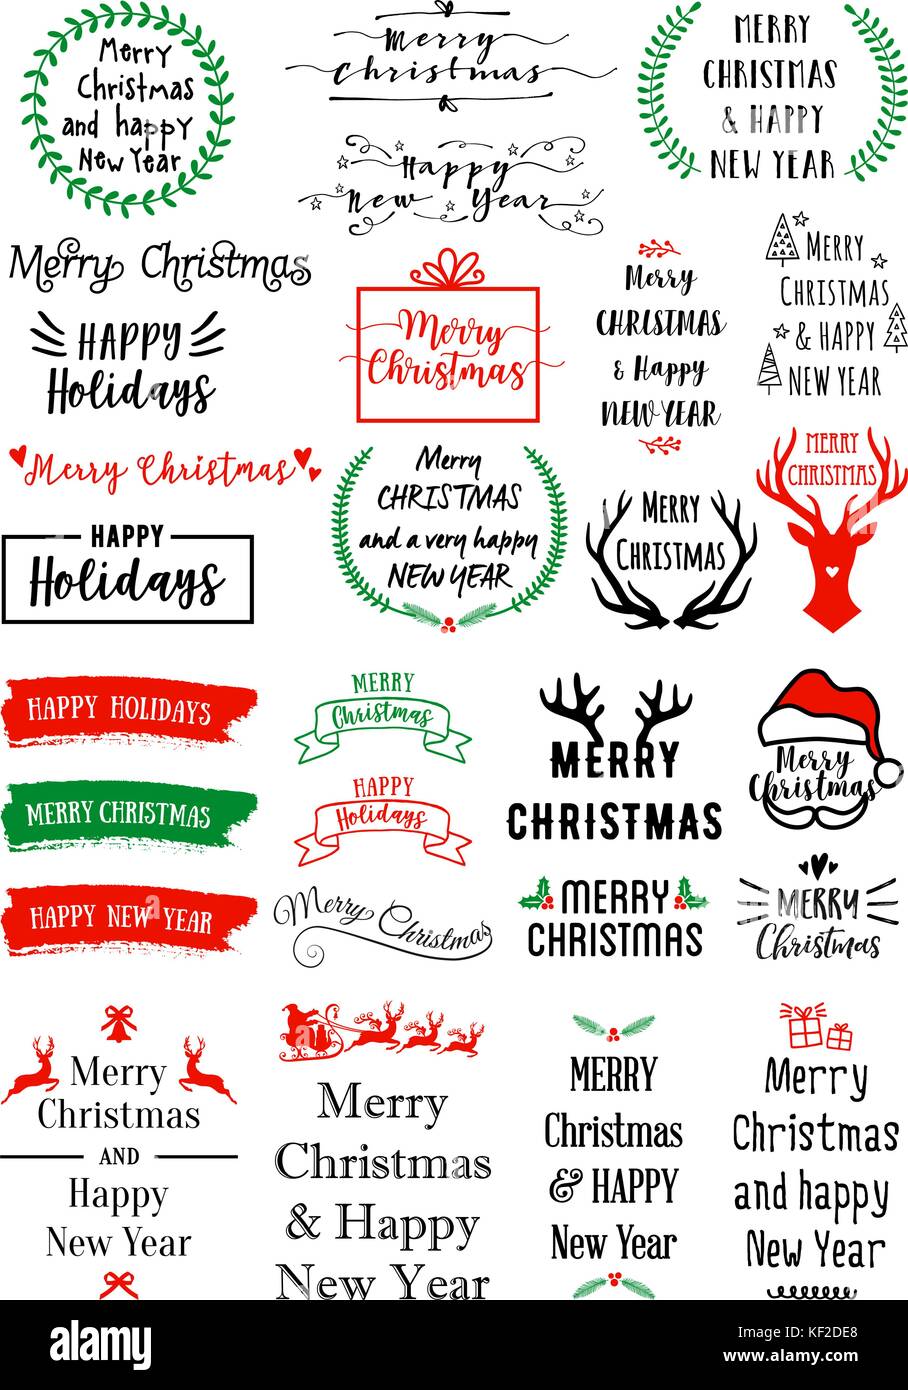 Weihnachten Text, Overlays für Karten, Banner, Tags, der Vektor Grafik Design Elemente einstellen Stock Vektor